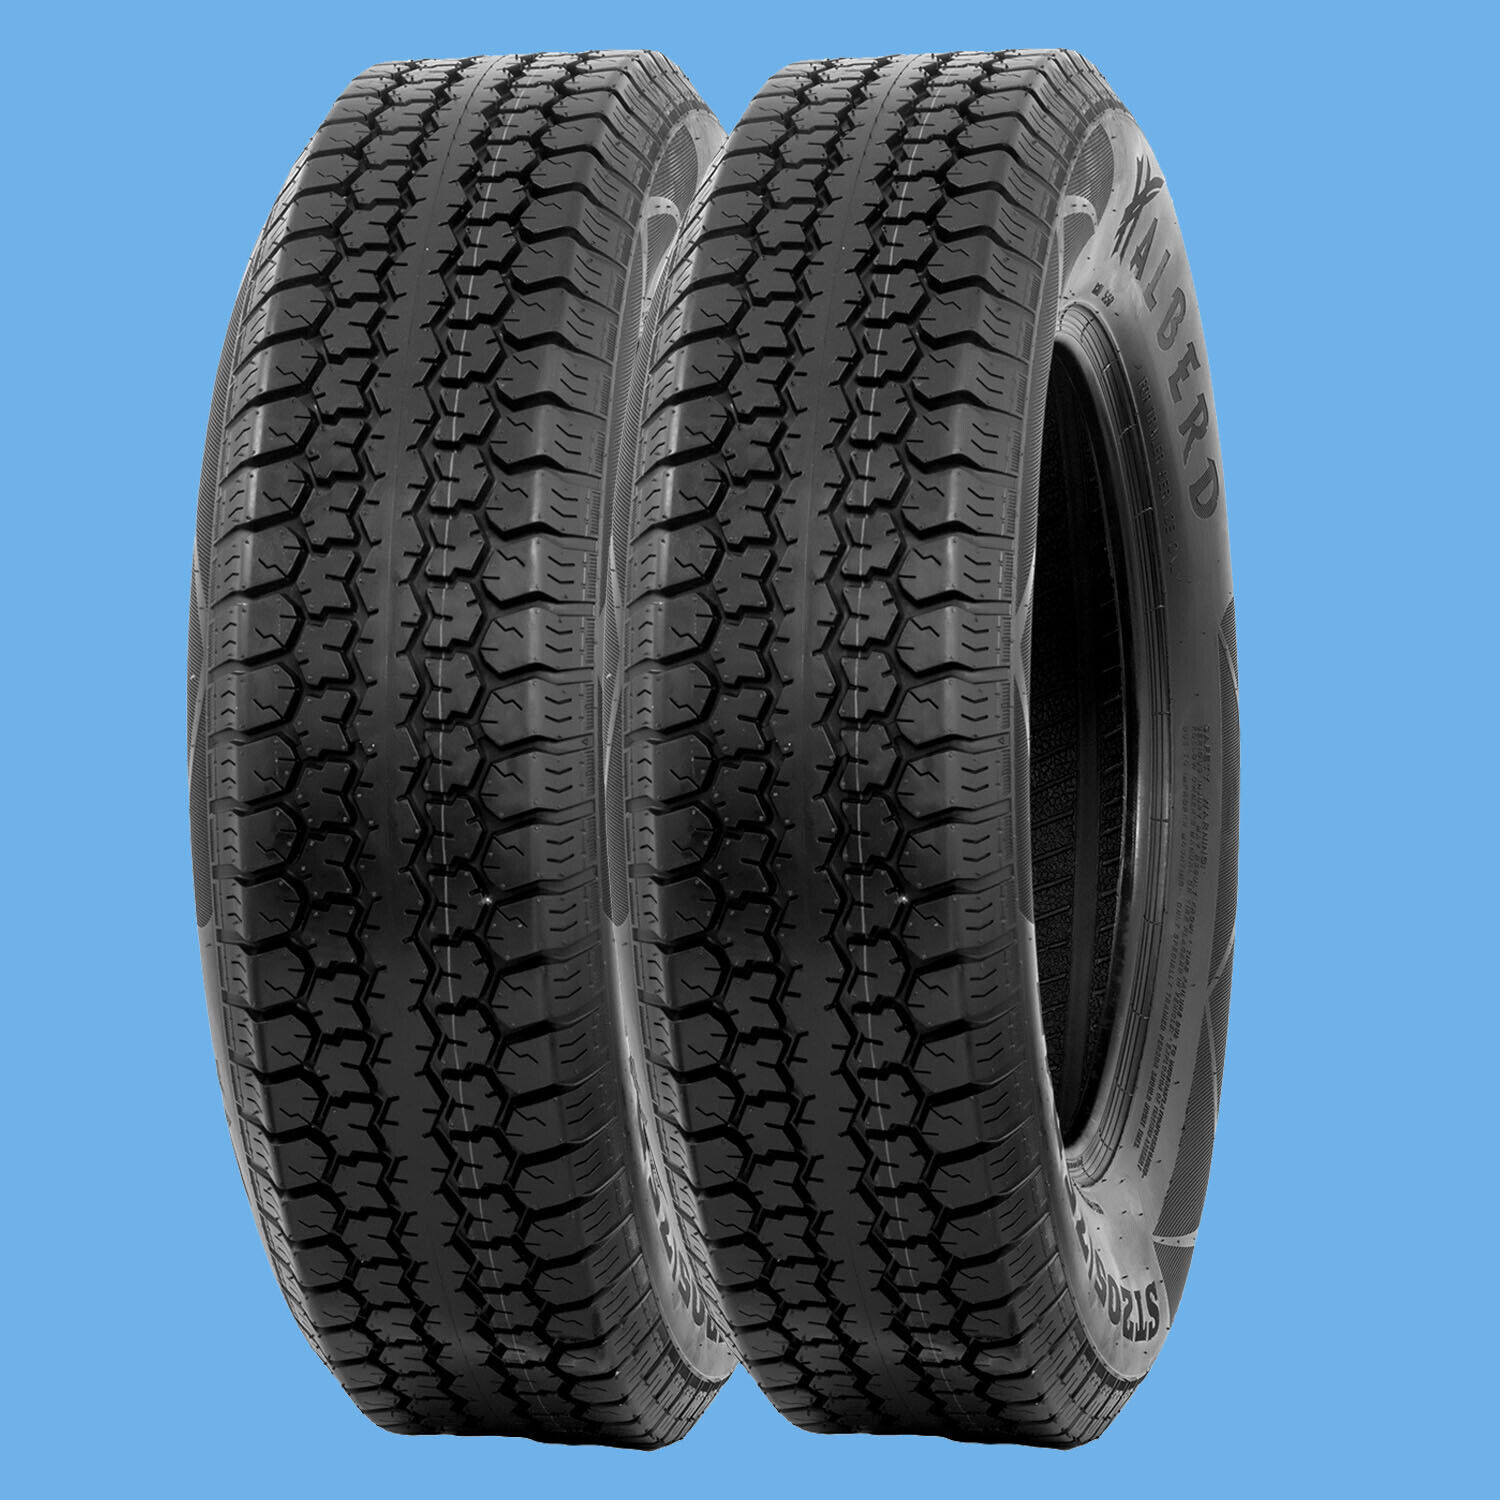 Set 2 Premium ST205/75D15 Trailer Tires 205 75 15 Heavy Duty 6Ply Load Range C